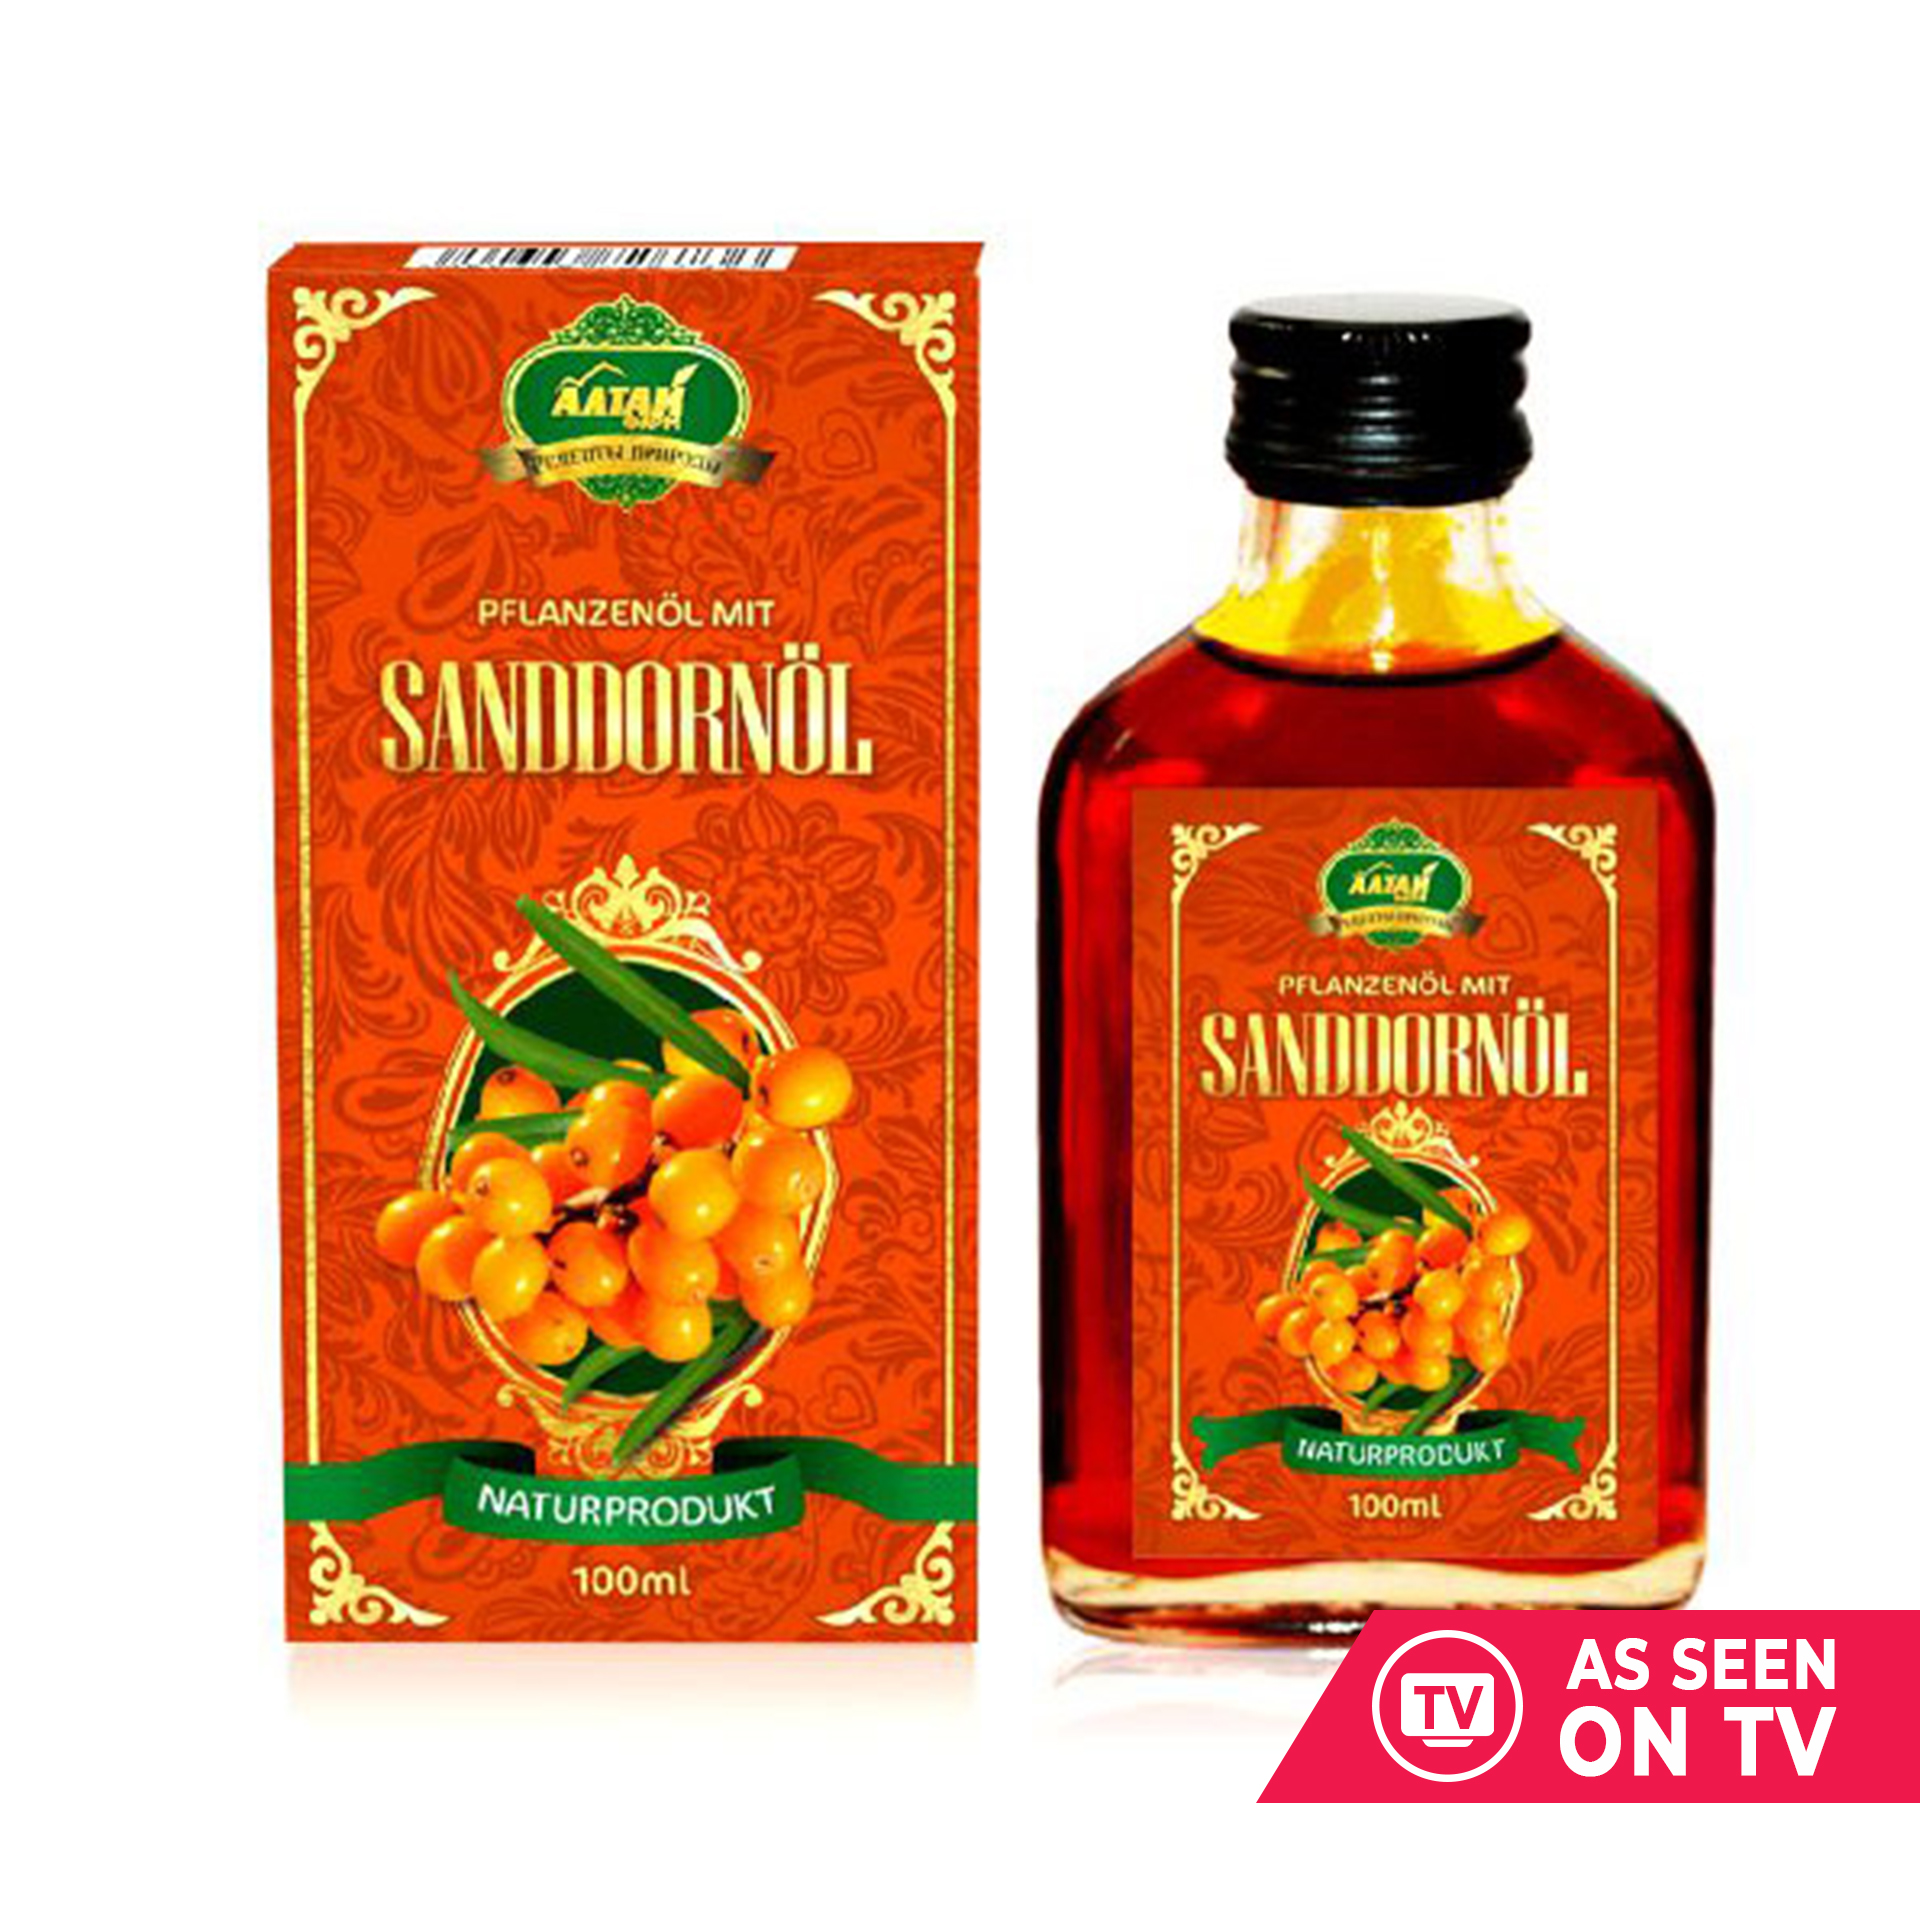 Pflanzenöl mit Sanddornöl "Premium", 100 ml